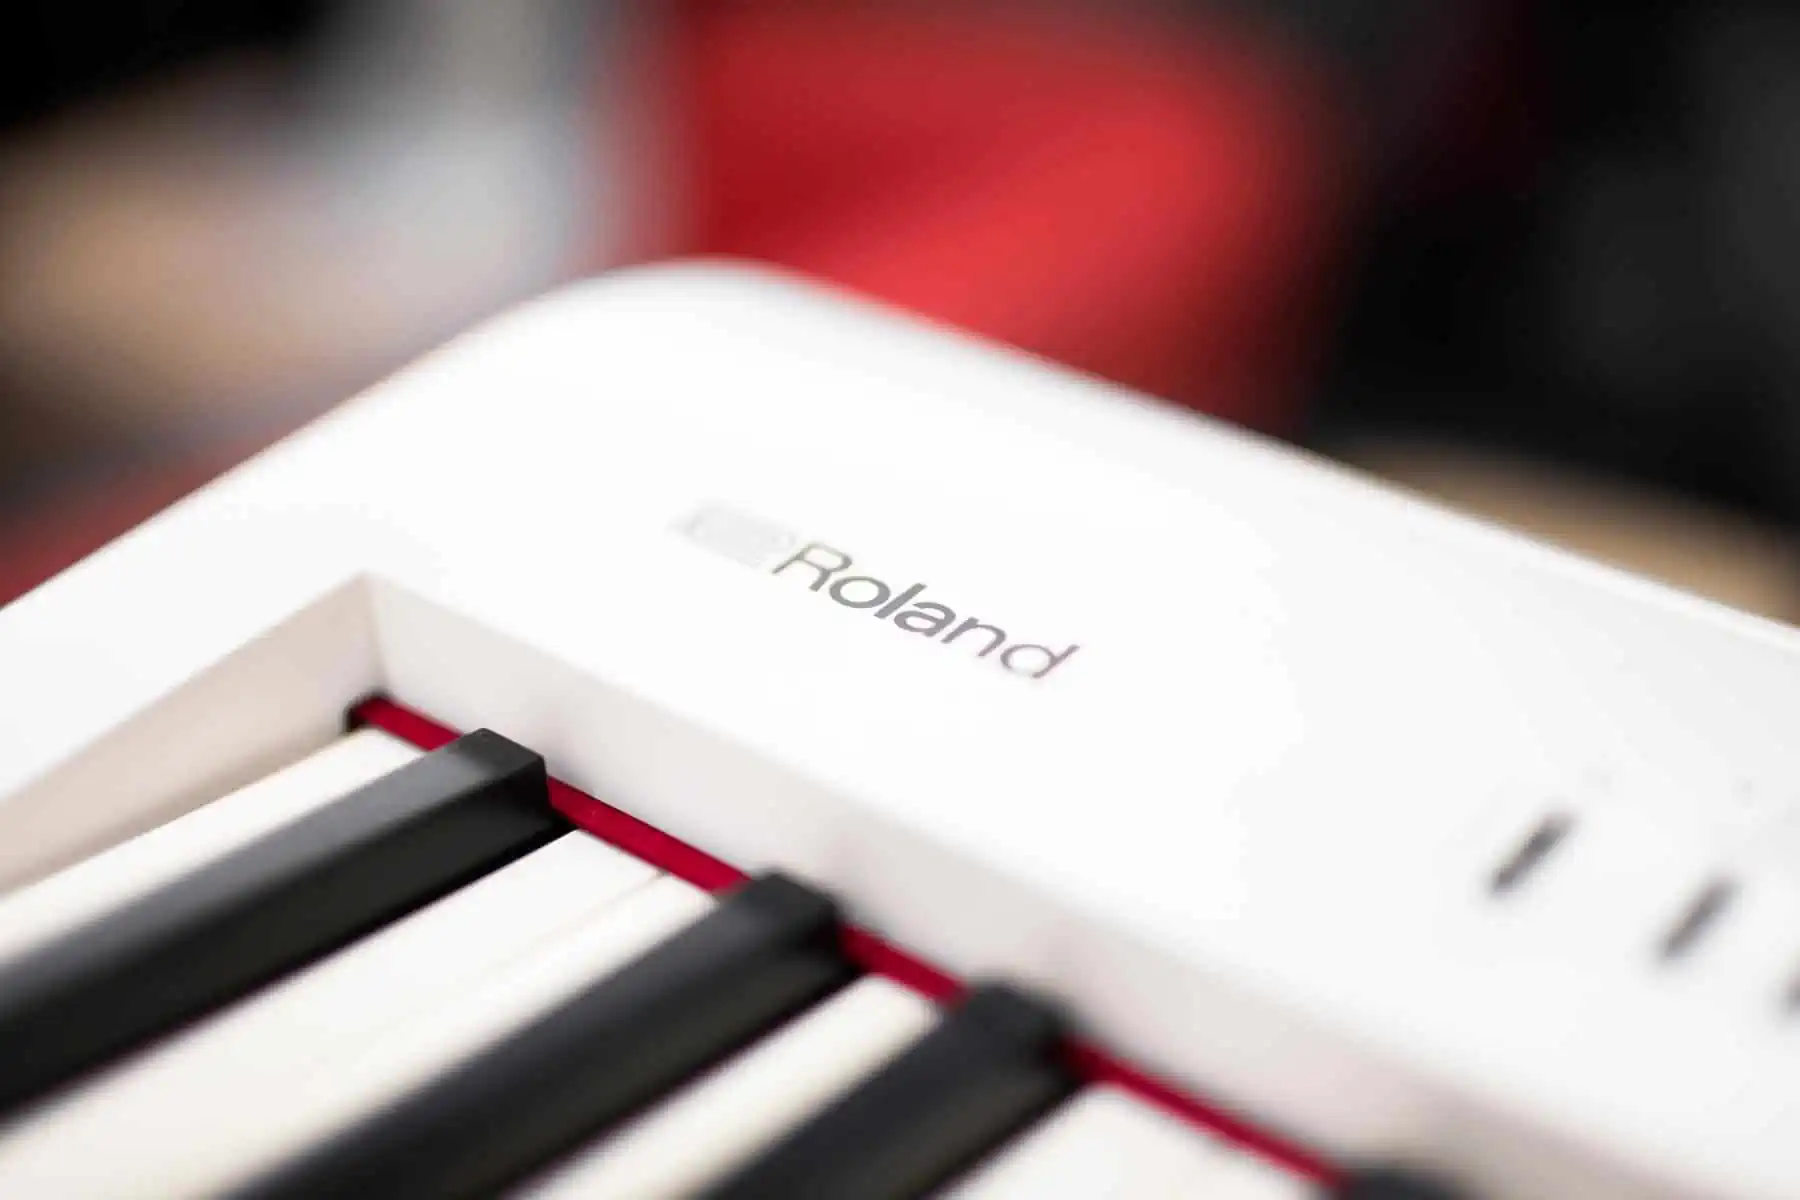 Roland Presenta un Nuevo Modelo de Piano con Drones para su 50 Aniversario